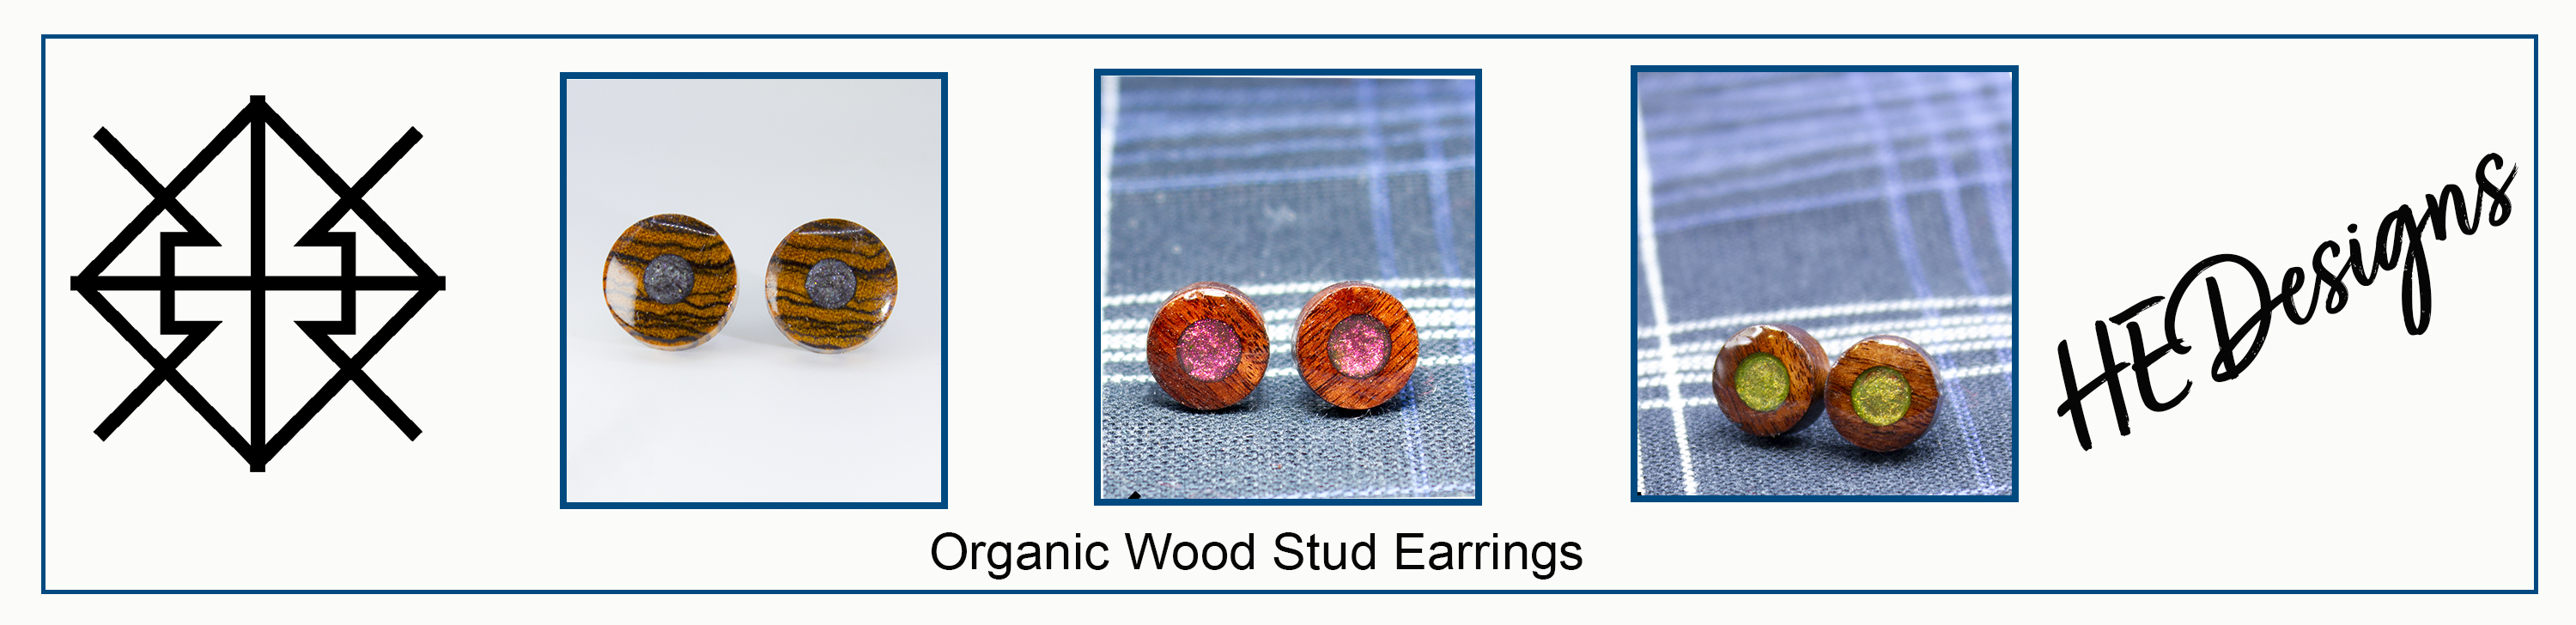 Hedesigns wood Stud Earrings